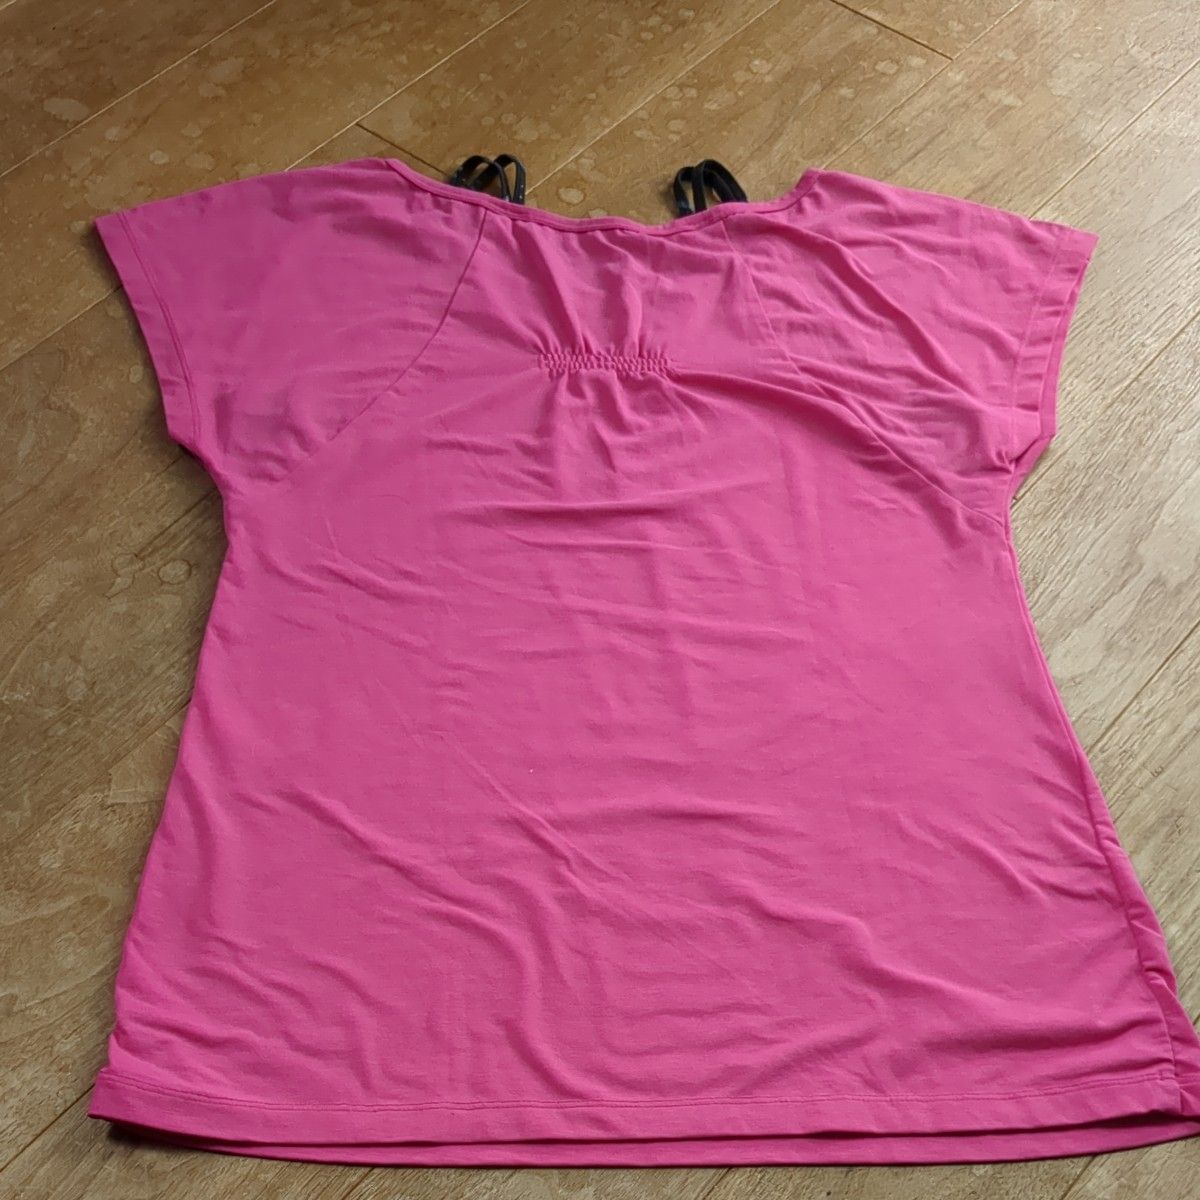 スポーツウェア PUMA ヨガウェア ピンク カットソー Tシャツ Lサイズ